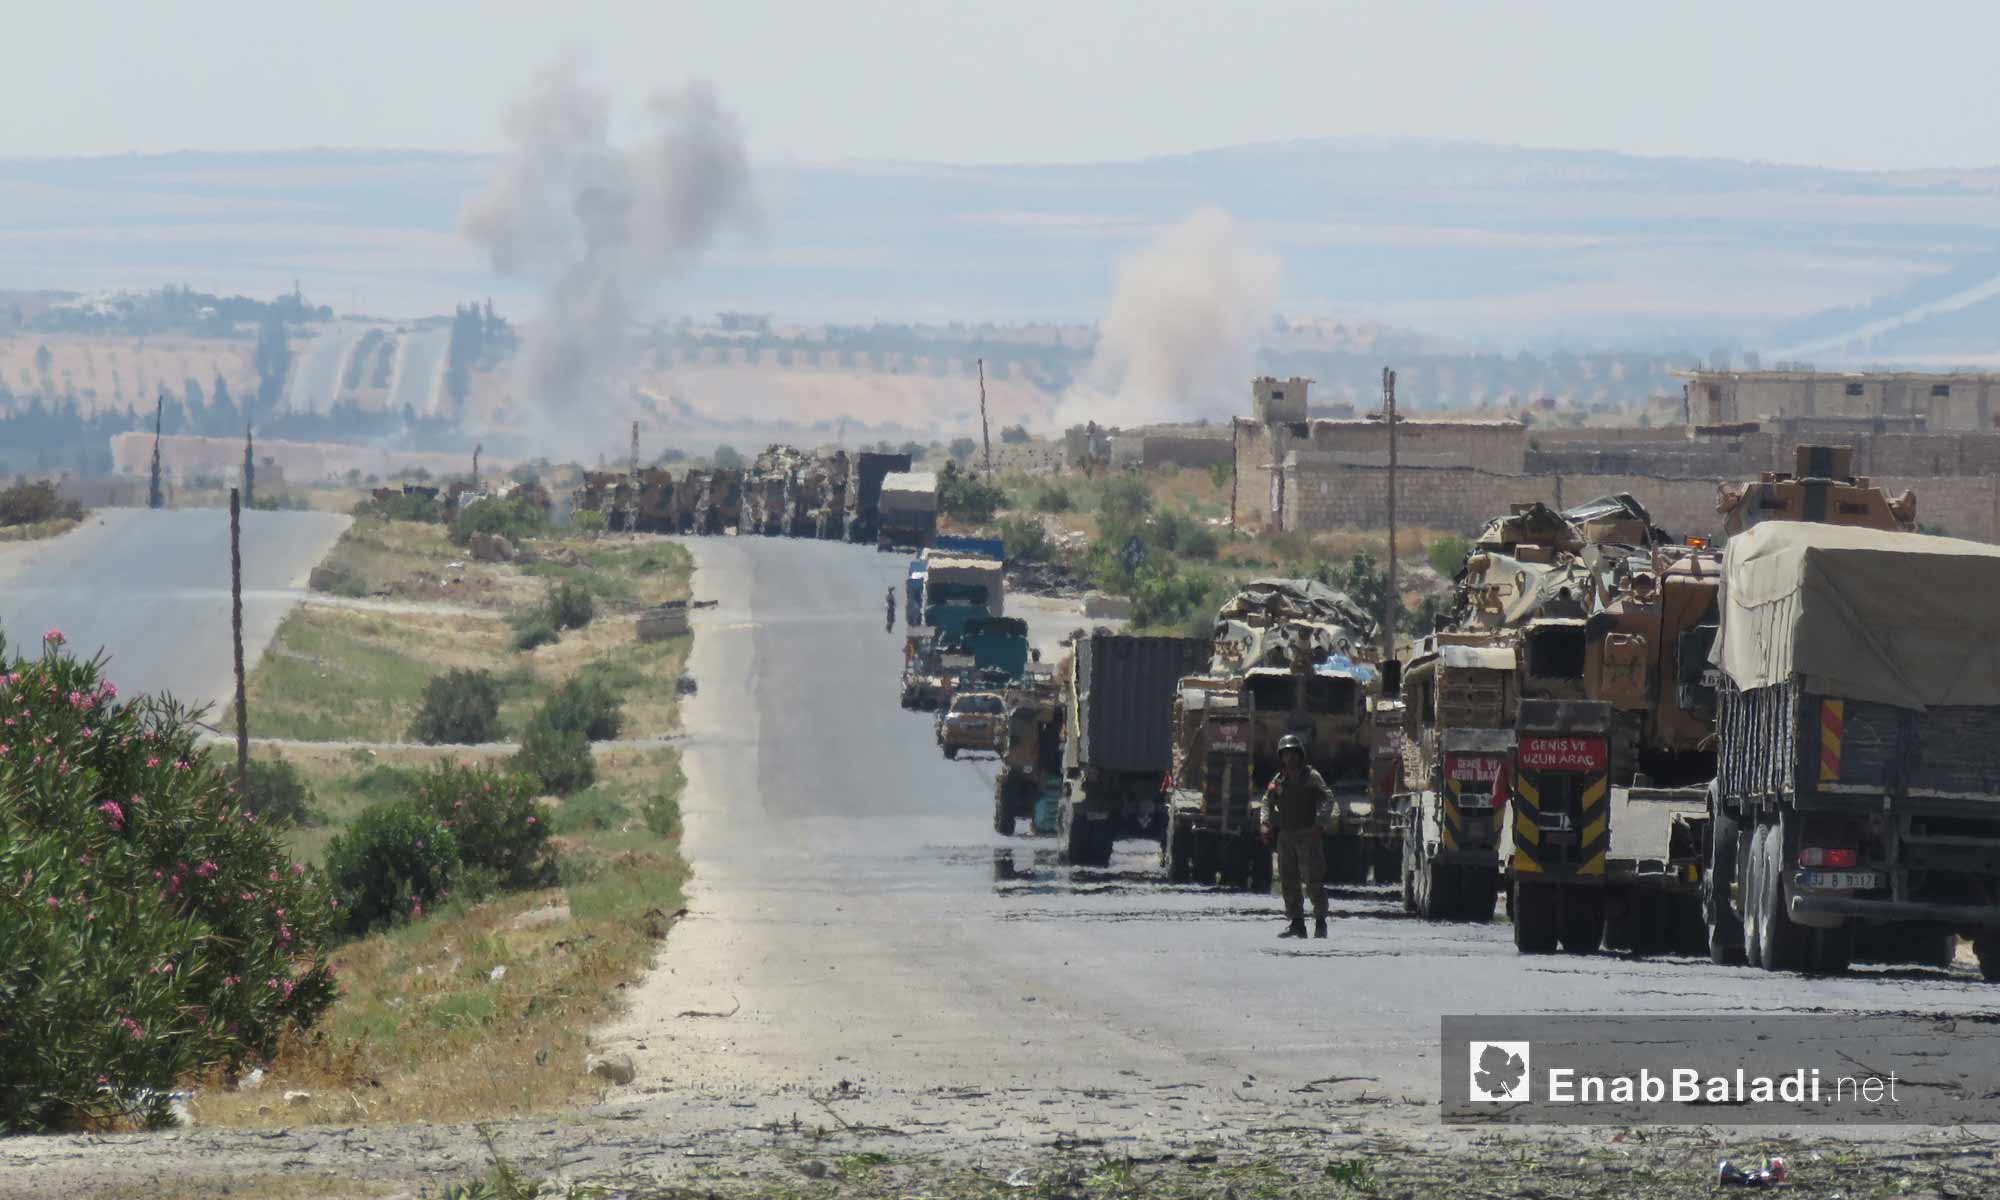 توقف رتل تركي بالقرب من قرية معرحطاط جنوب معرة النعمان في إدلب بعد استهدافه من قبل قوات النظام السوري- 19 من آب 2019 (عنب بلدي)